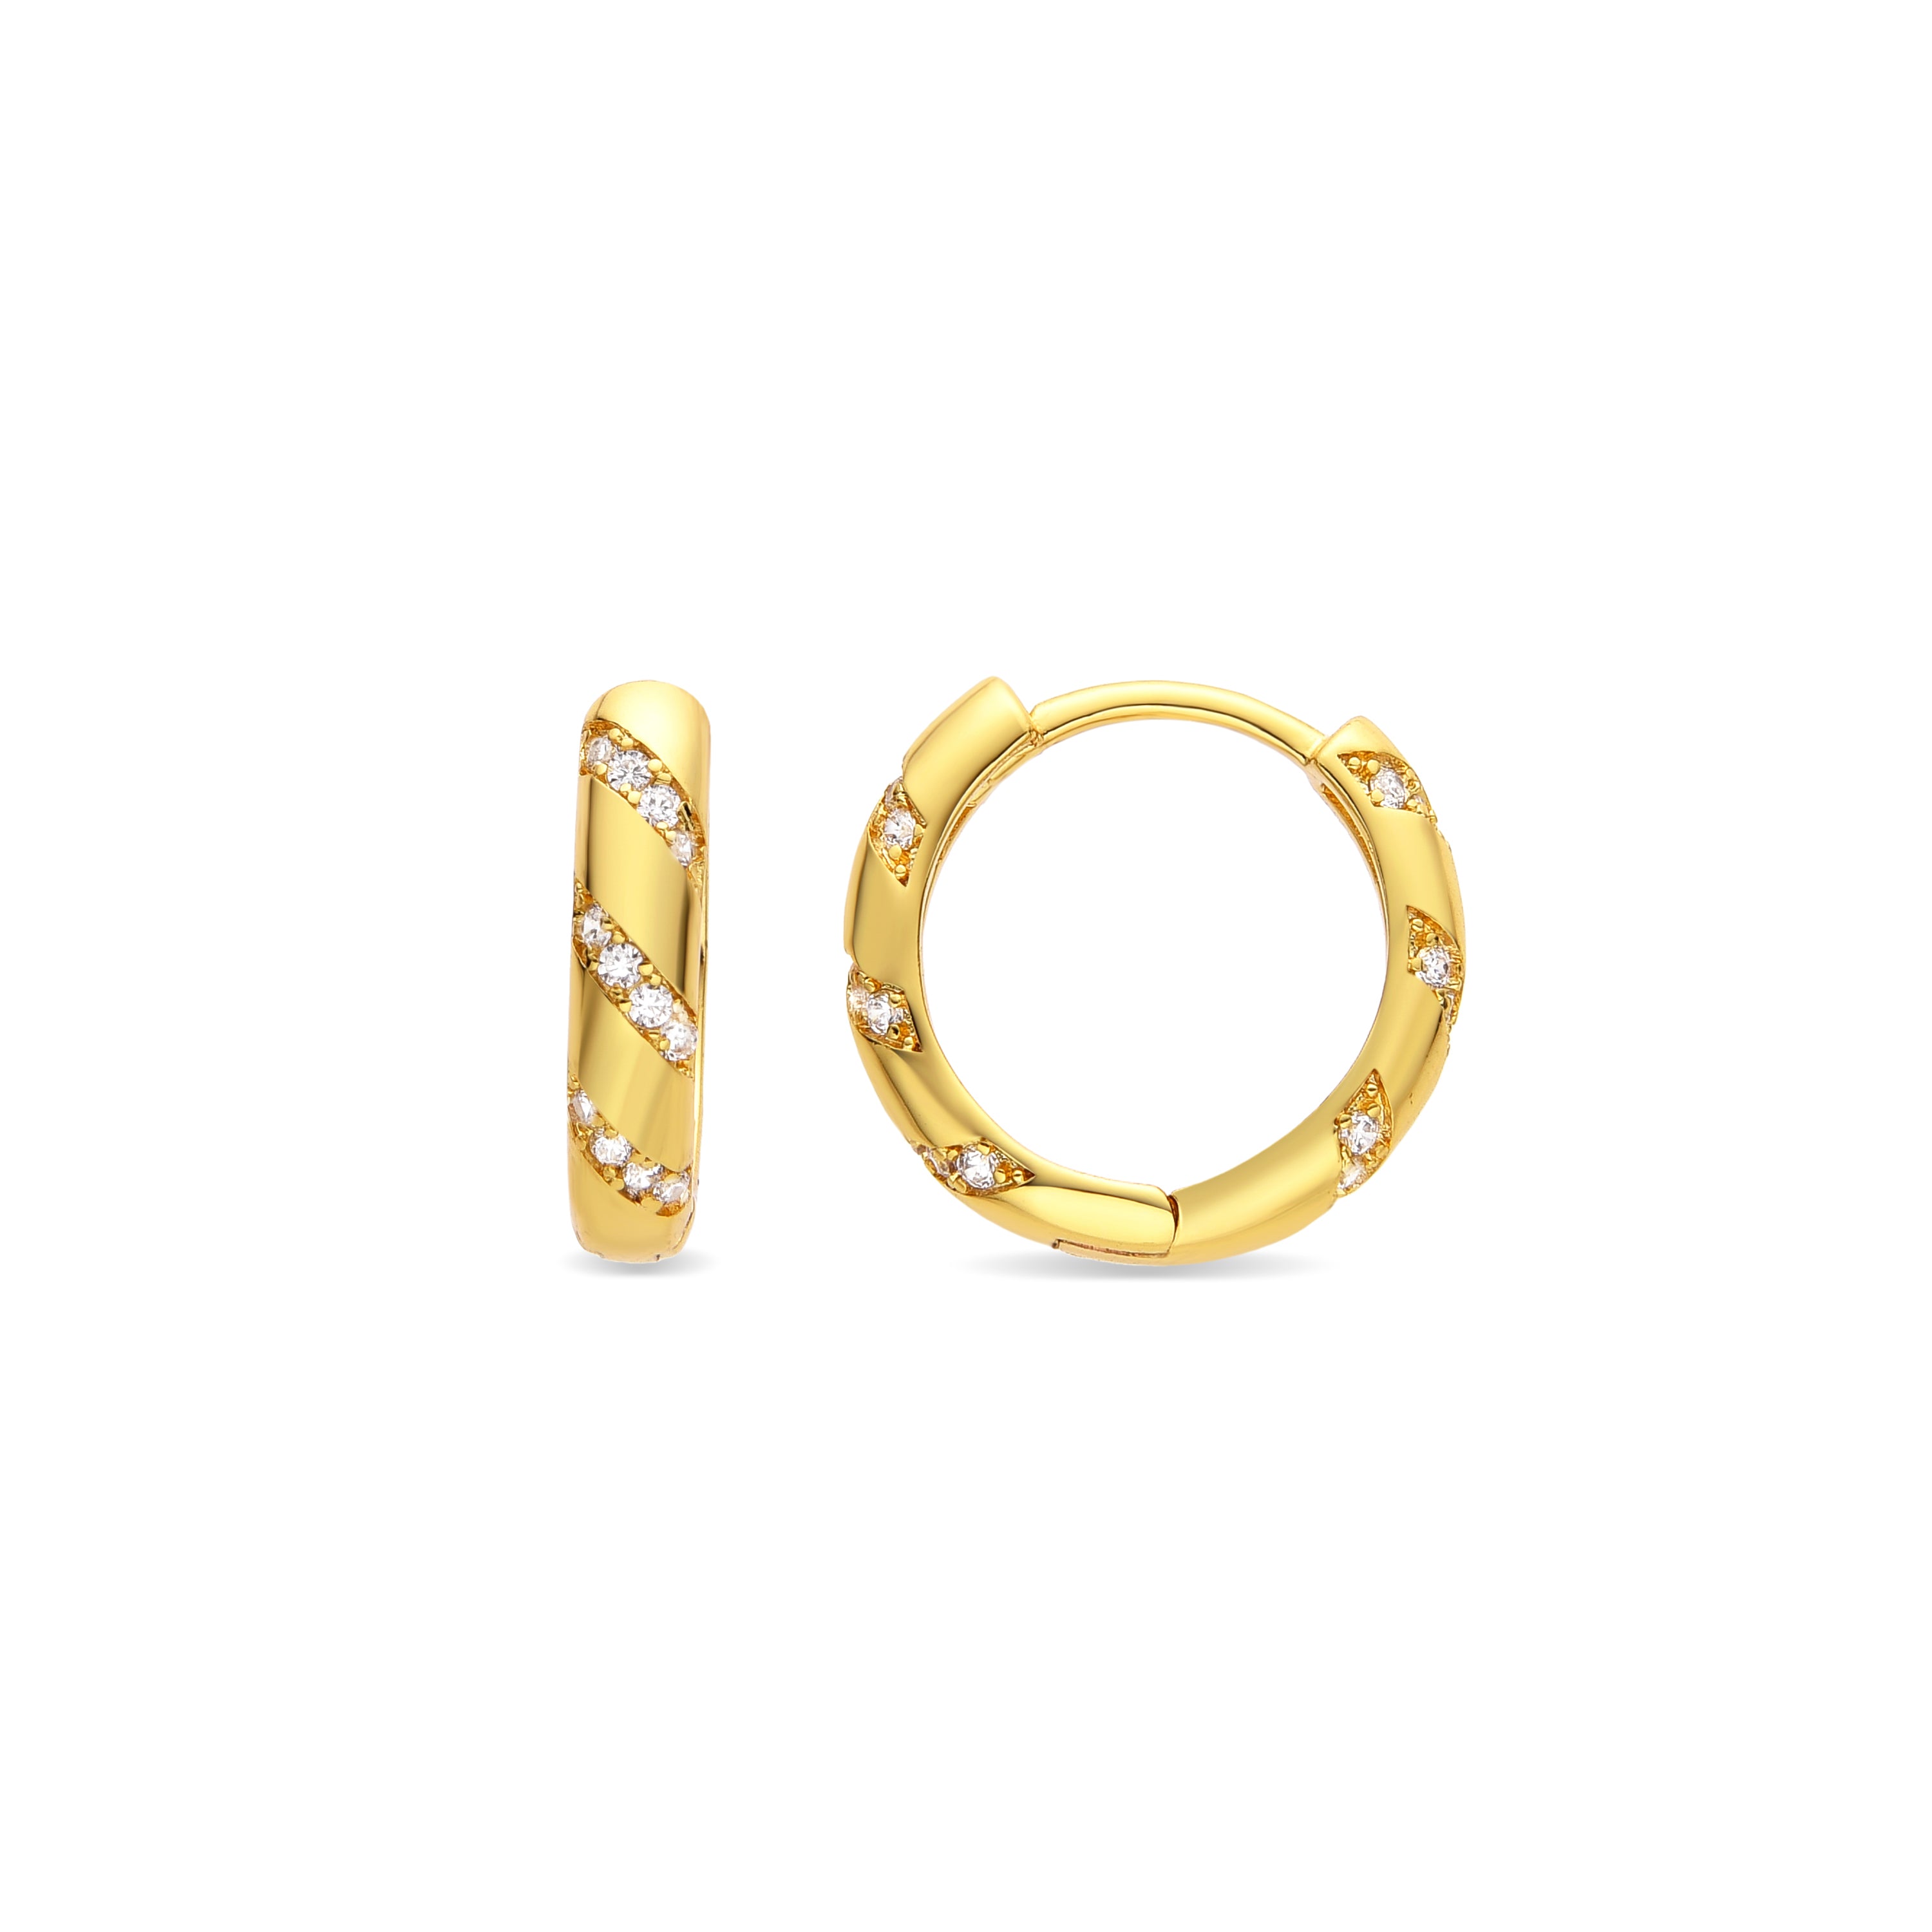 Lionvi earrings 18k yellow gold finish